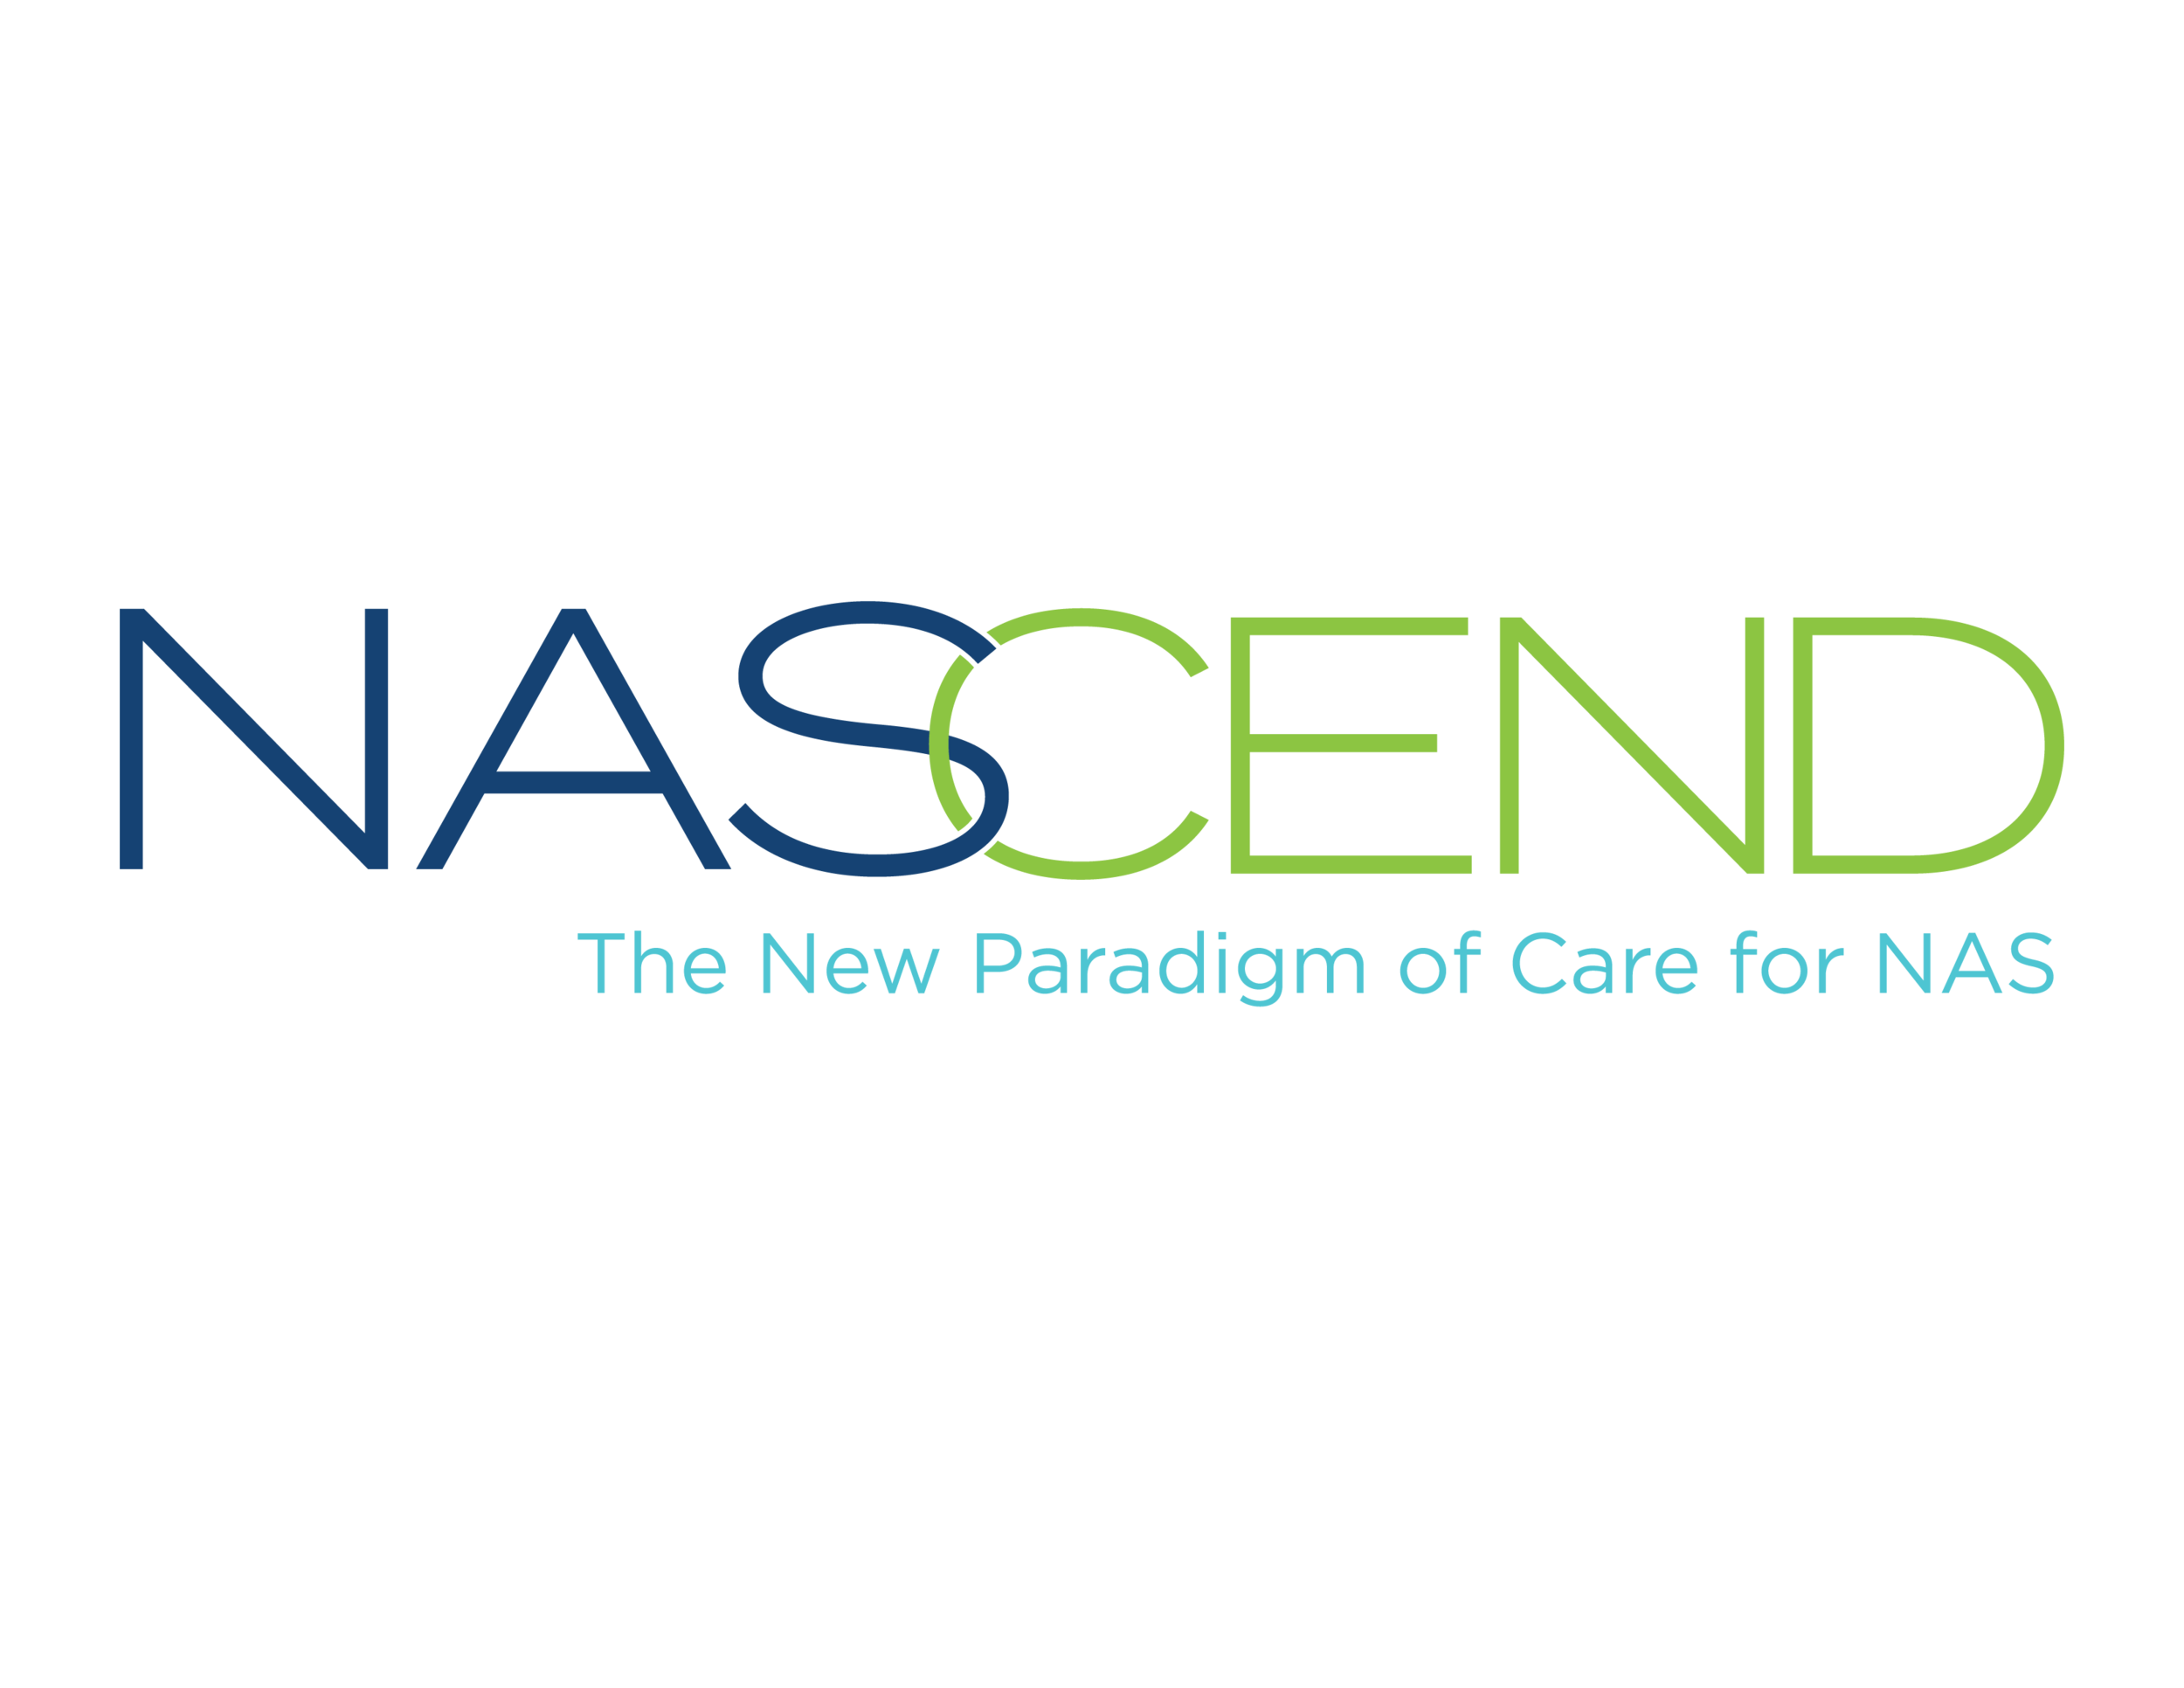 new-nascend-logo-11-2017-final-01.png